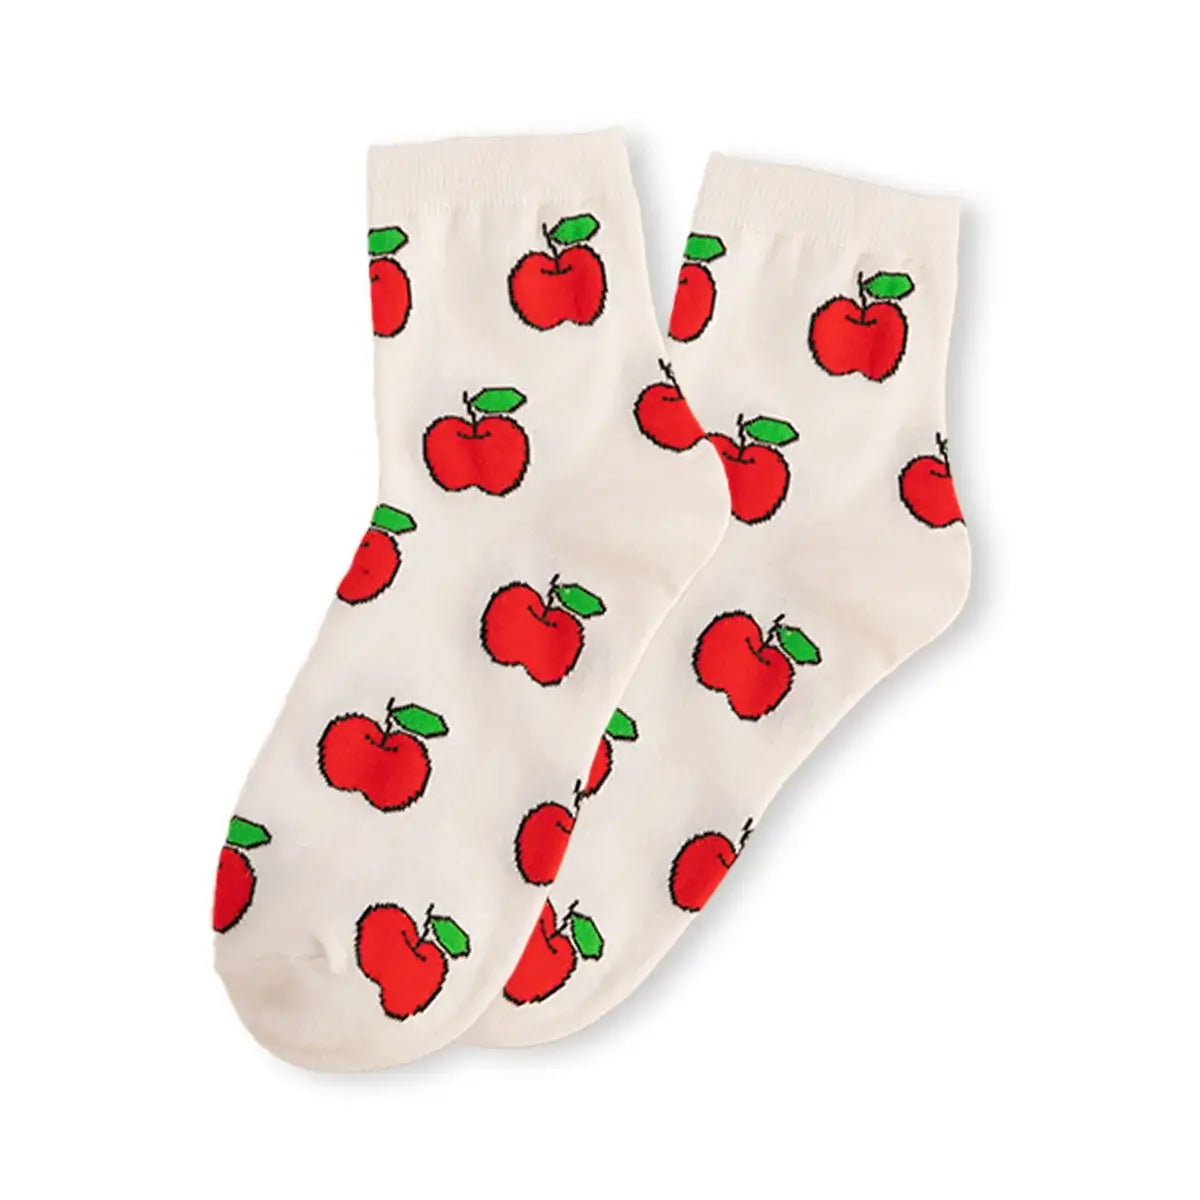 Chaussettes pomme longues en coton à motif fruit pour adultes | Chaussettes douces et confortables | Fabriquées à partir de matériaux de haute qualité | Un cadeau parfait pour les hommes et les femmes de tous âges